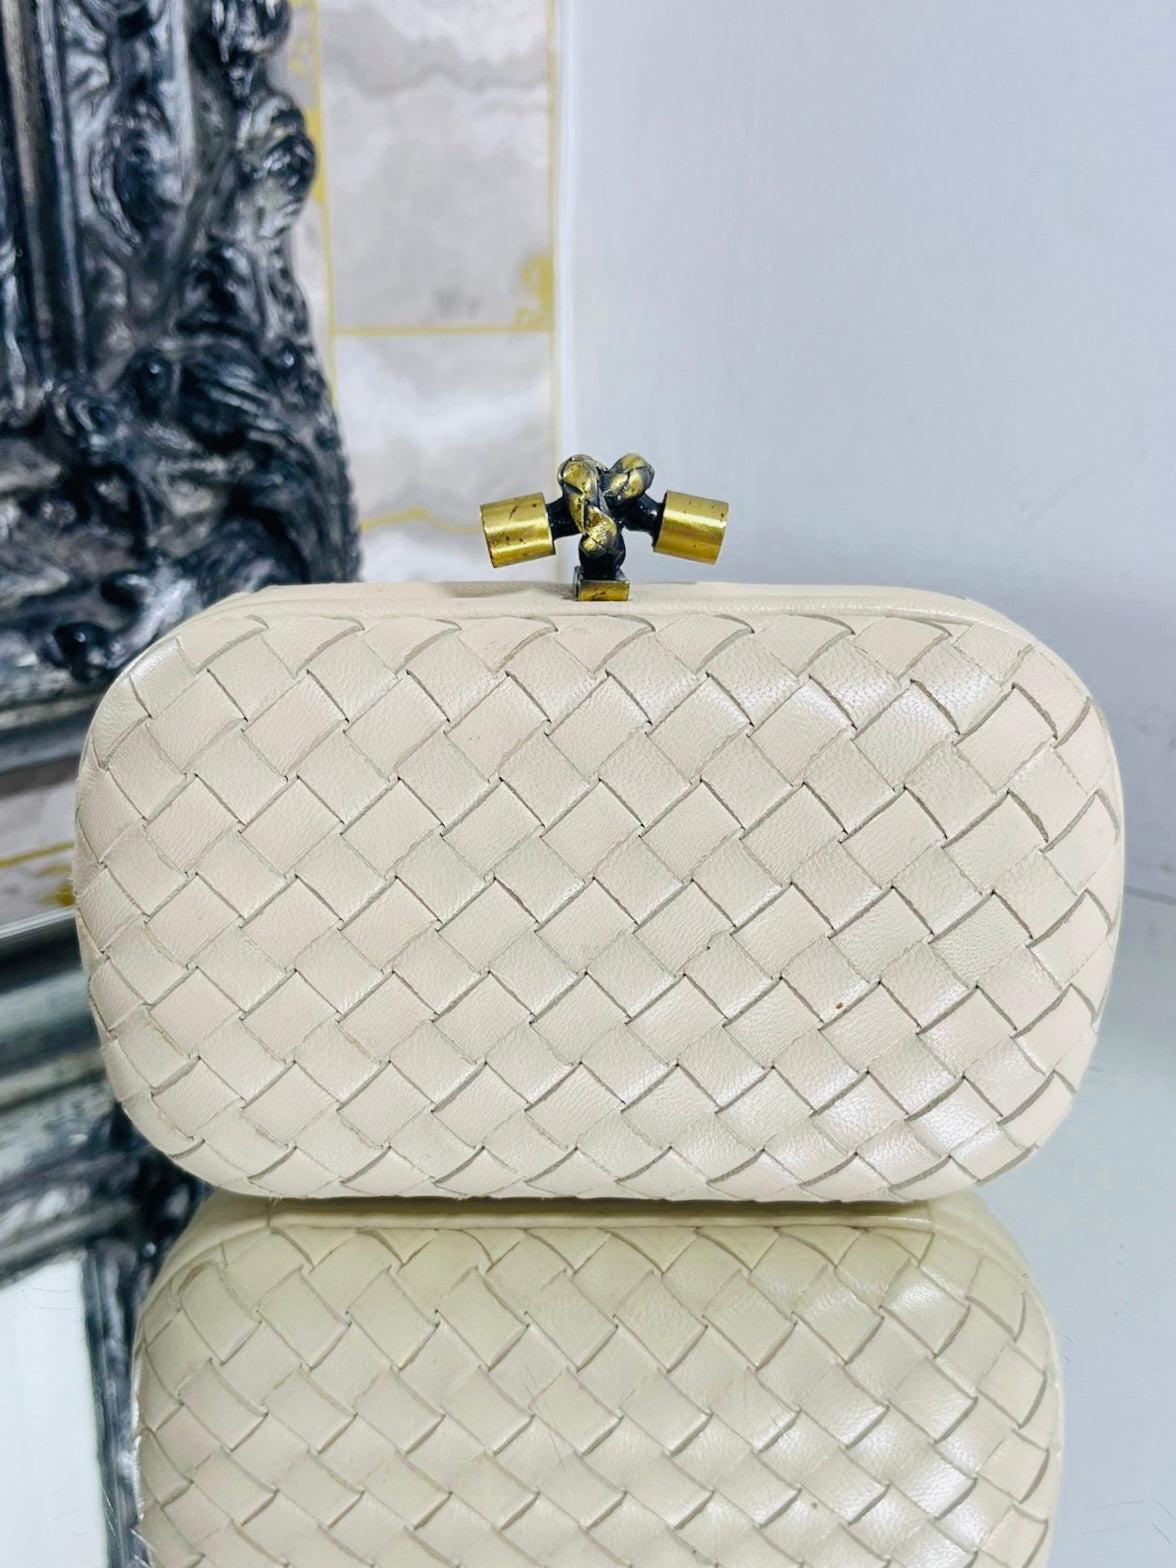 Bottega Veneta - Pochette en cuir à nœud supérieur

Pochette en cuir ivoire conçue avec le tissage Intrecciato emblématique de la marque, dotée d'une fermeture à nœud torsadé emblématique et d'un logo gravé en or antique.

Taille - Hauteur 10cm,